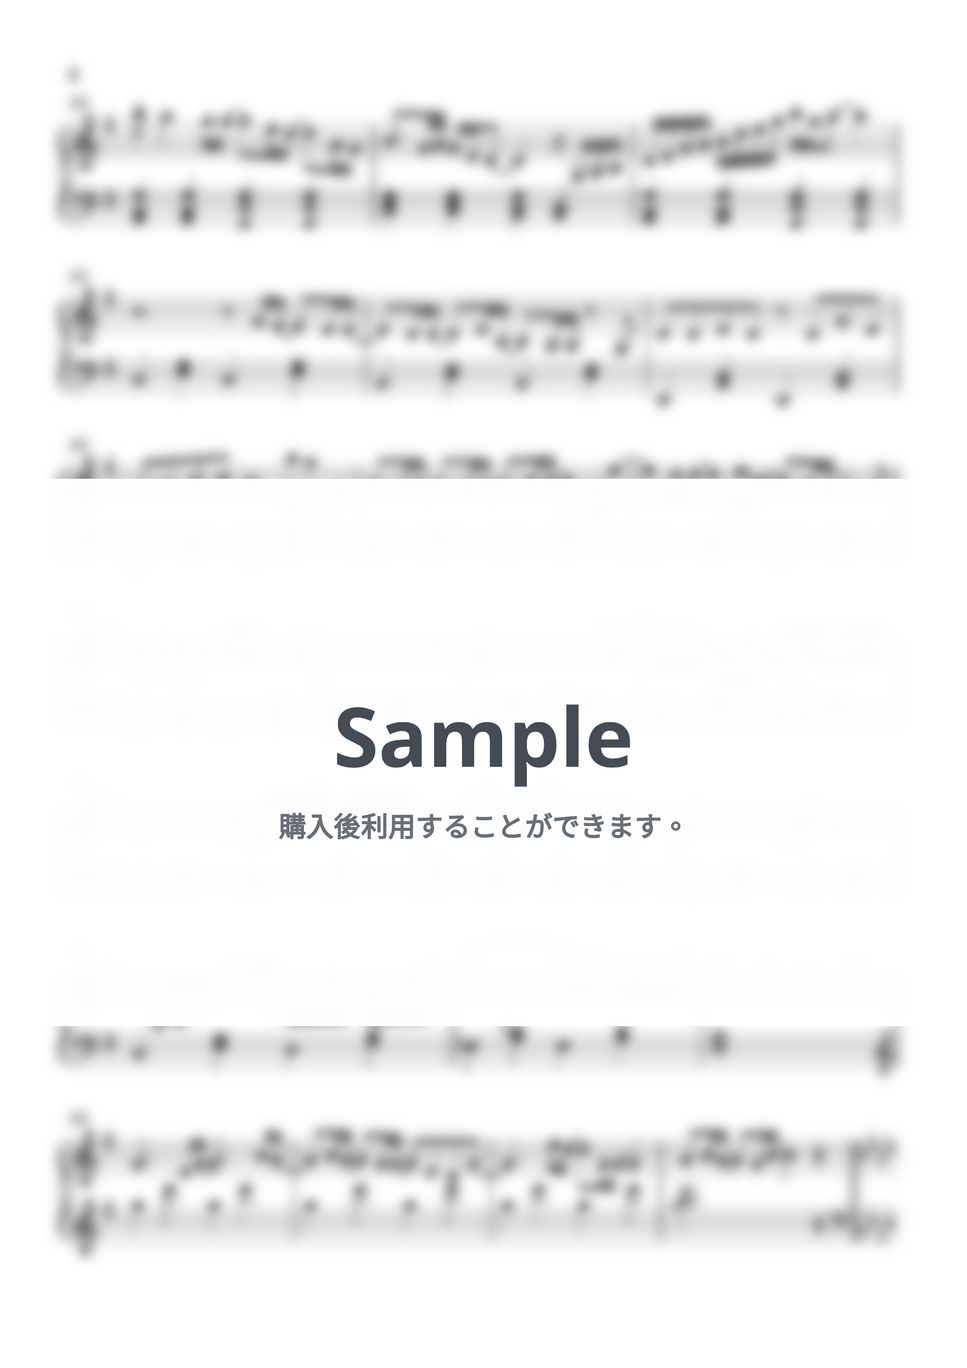 yama - Oz. (王様ランキング / ピアノ楽譜 / 初級) by Piano Lovers. jp